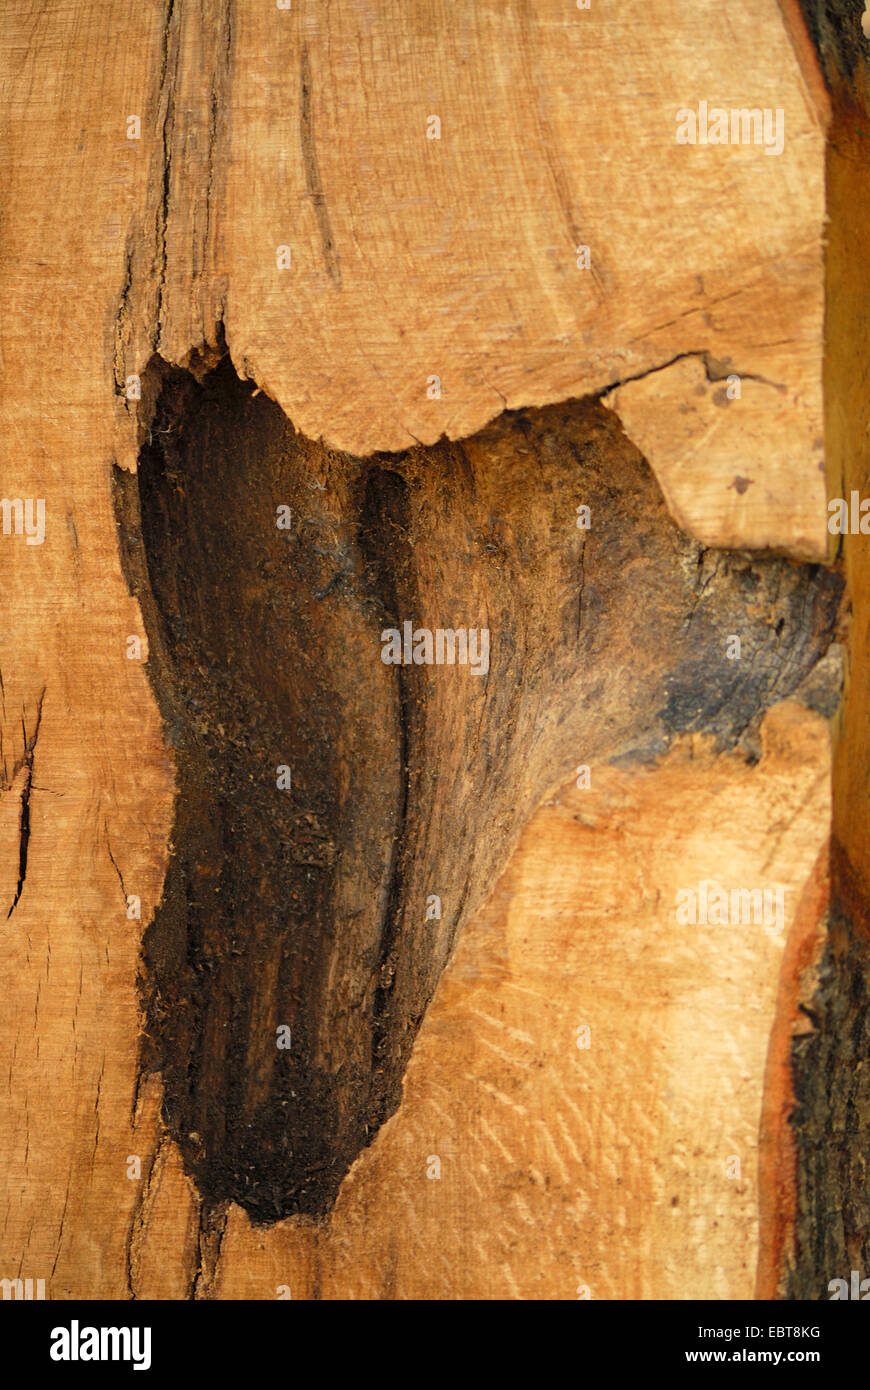 Il picchio, wrynecks, piculets (Picidae), la sezione trasversale del tronco di un albero con un picchio in cavità, Germania Foto Stock